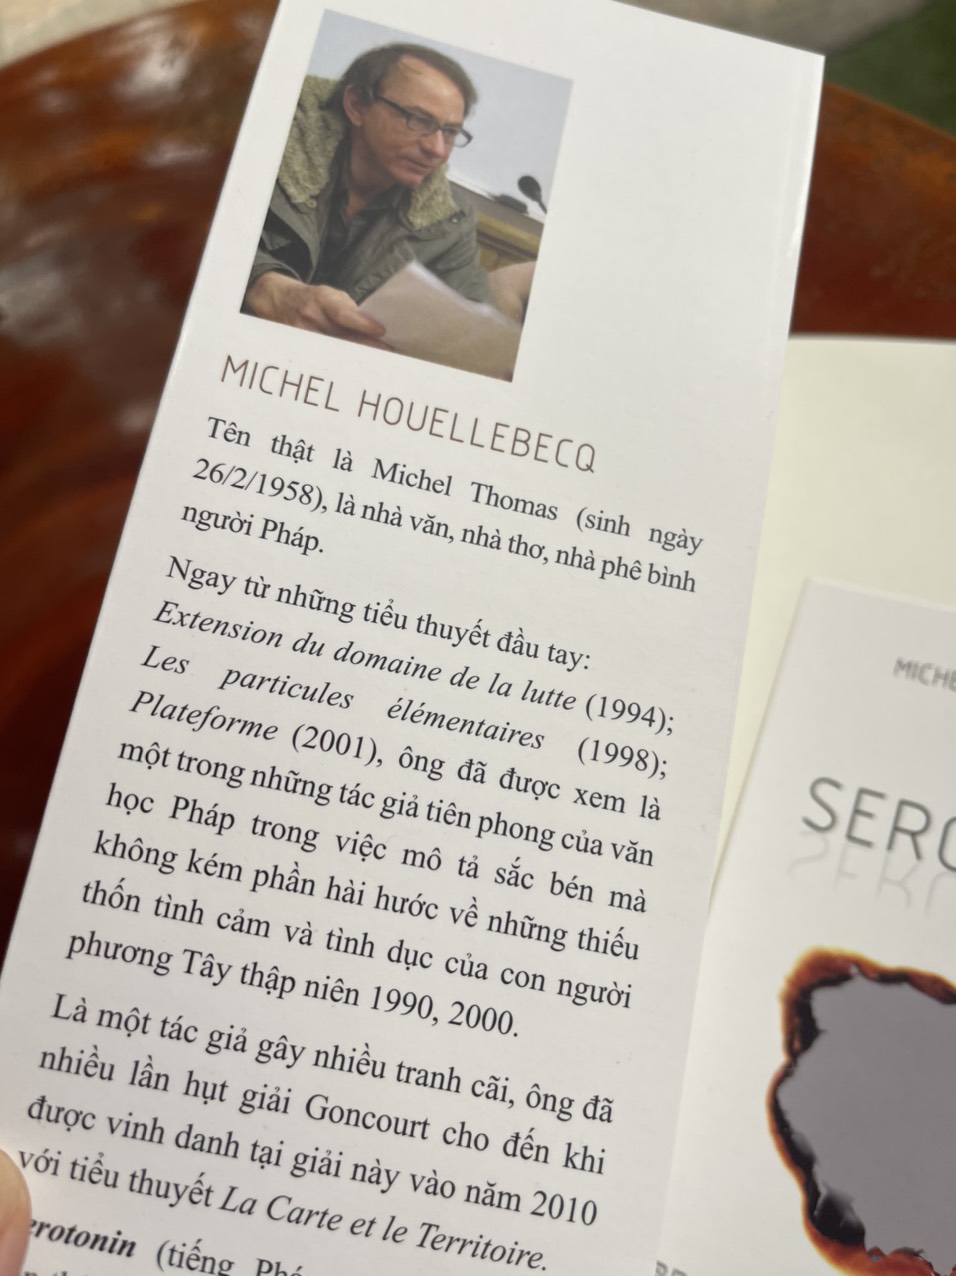 Hình ảnh SEROTONIN – Mechel Houellebecq – Thuận dịch – Phanbook – bìa mềm